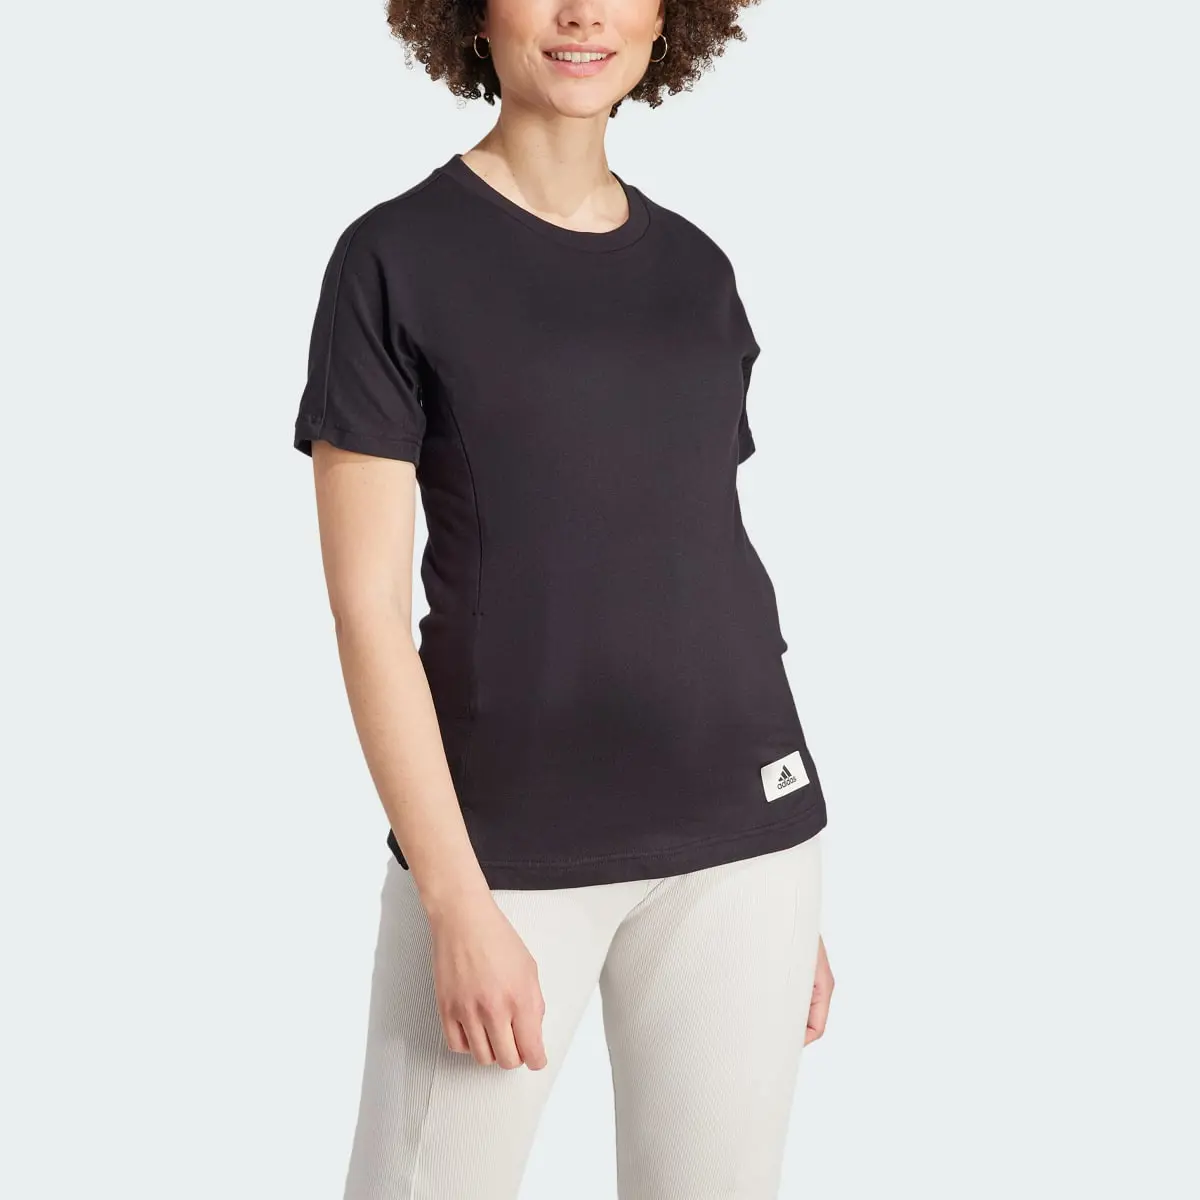 Adidas T-shirt (Maternité). 1